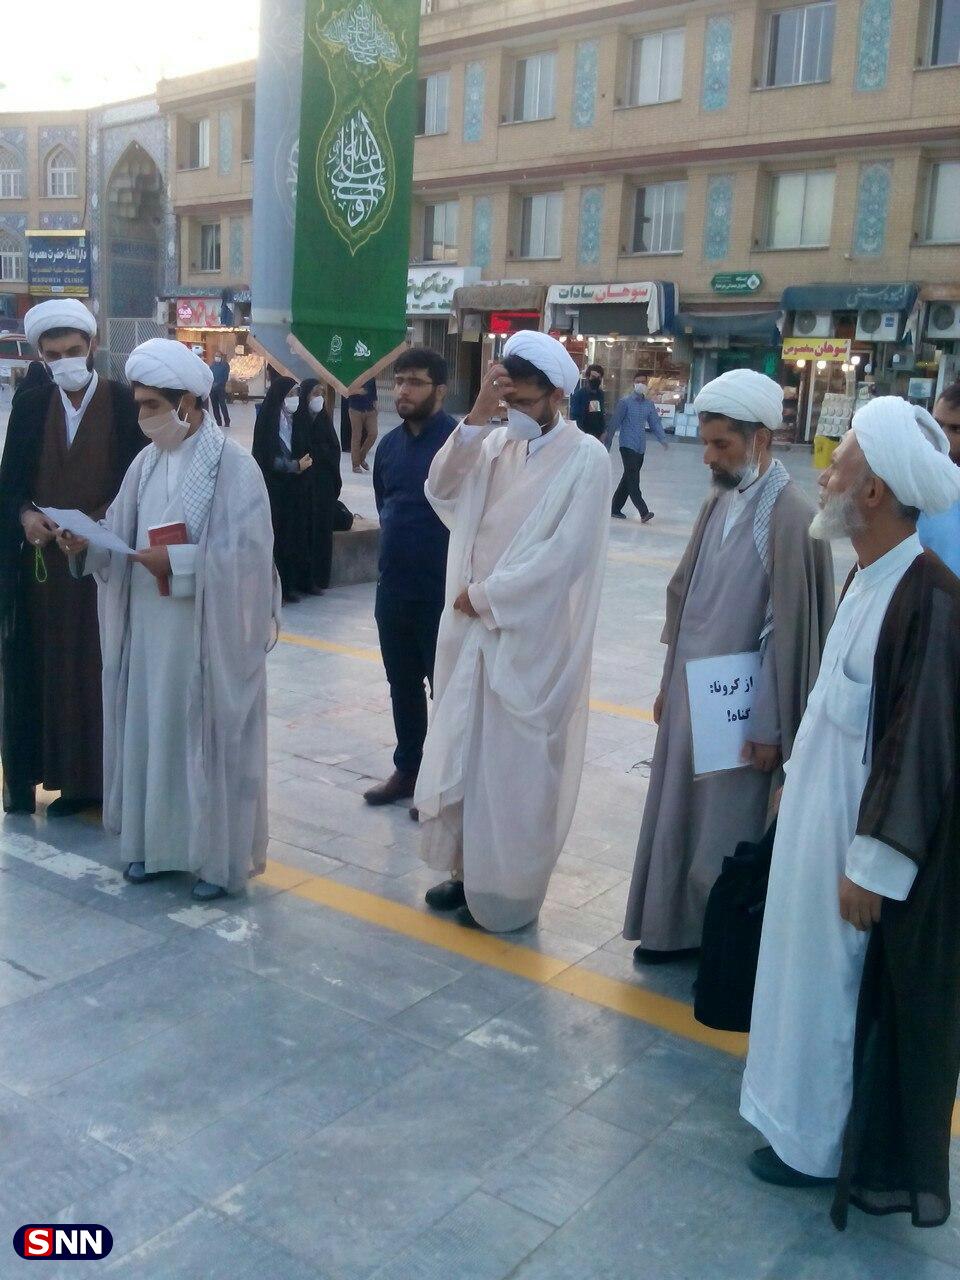 طلاب و دانشجویان در کنار حرم حضرت معصومه (س) تجمع کردند + عکس